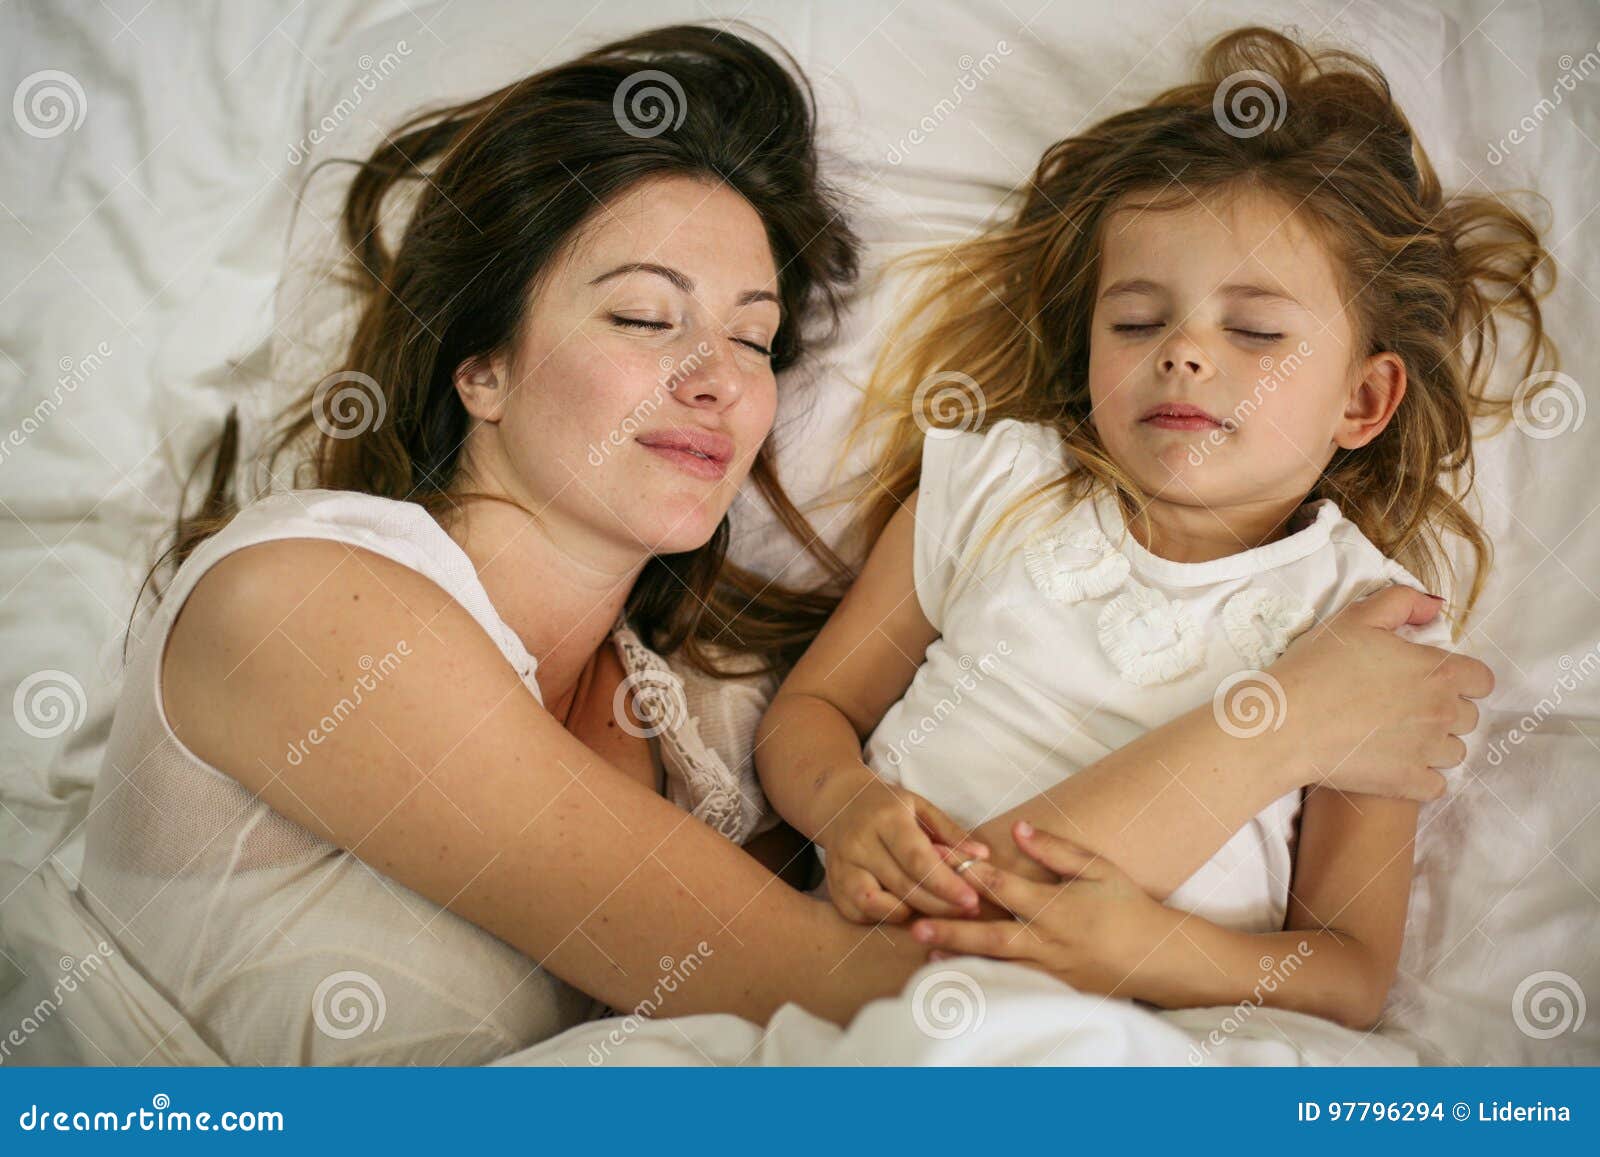 Мама с дочкой в постели. Мама с дочкой спят в обнимку. Мать и дочь обнимаются постель. Сон с дочкой в обнимку. Мама с дочей сон.